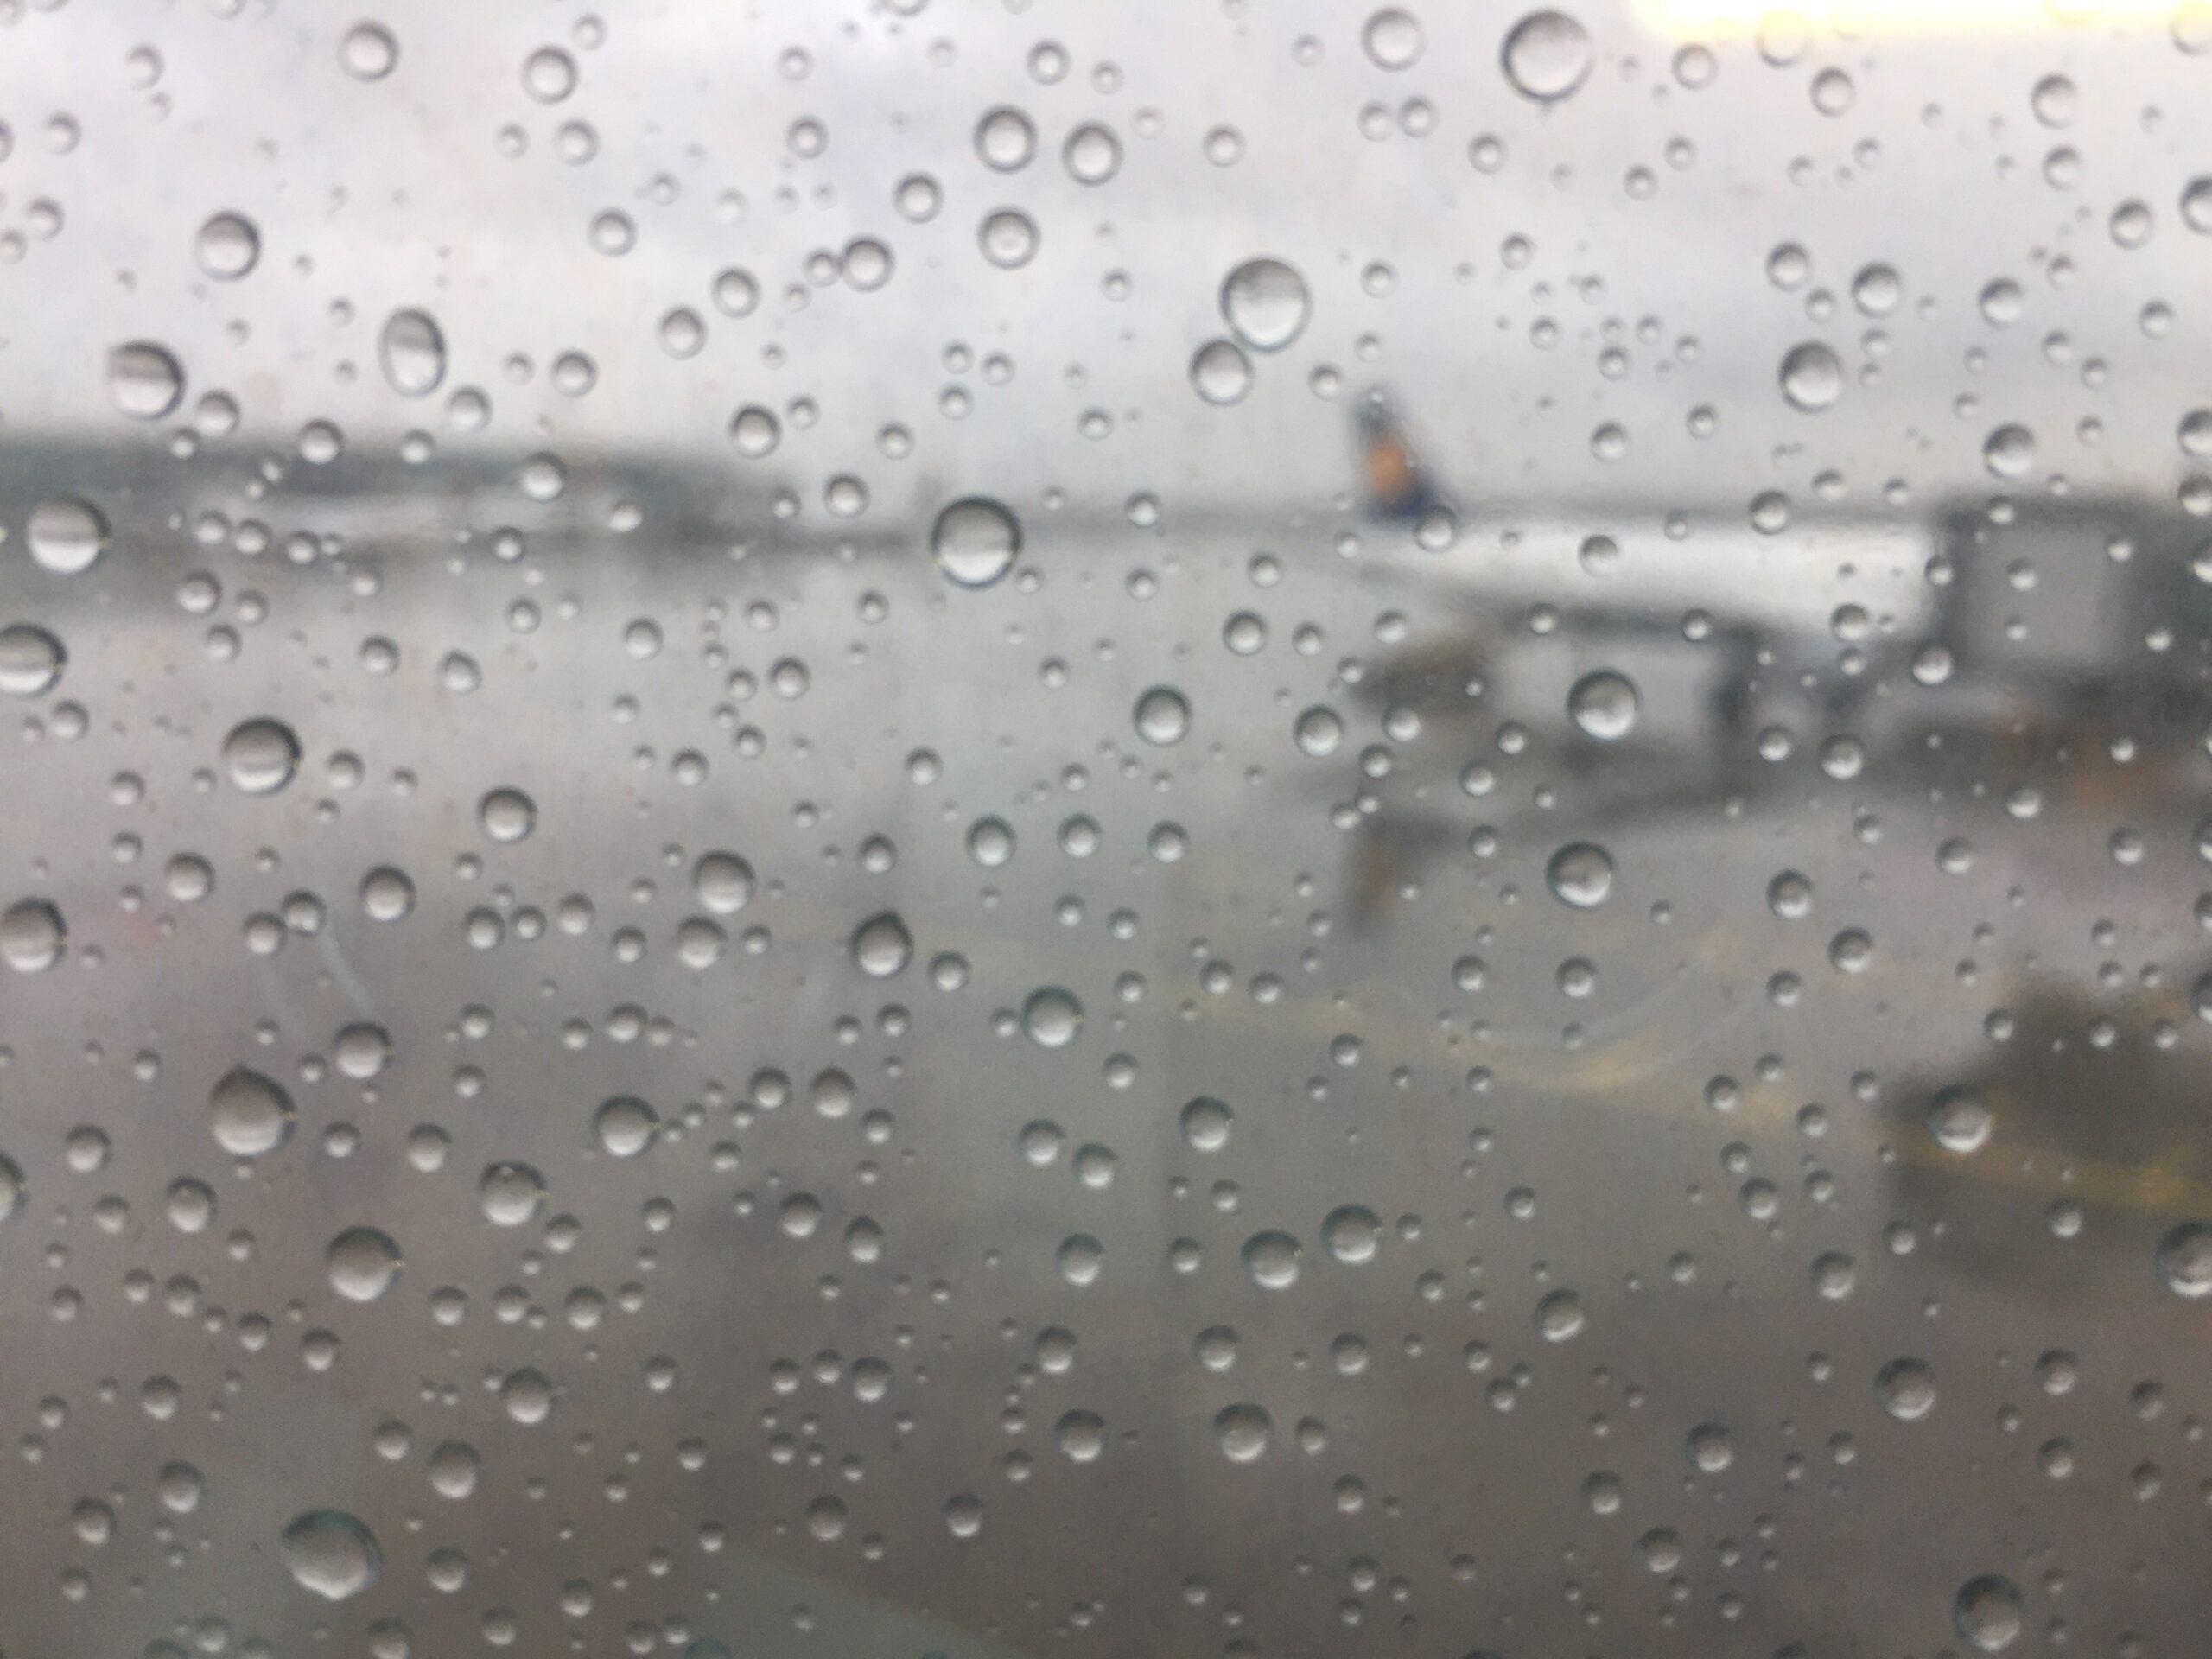 Vue depuis le hublot d'un avion sur une piste d'aéroport et un avion. La mise au point est sur les gouttes d'eau de la vitre. Ce qui est en arrière plan est flou et gris.